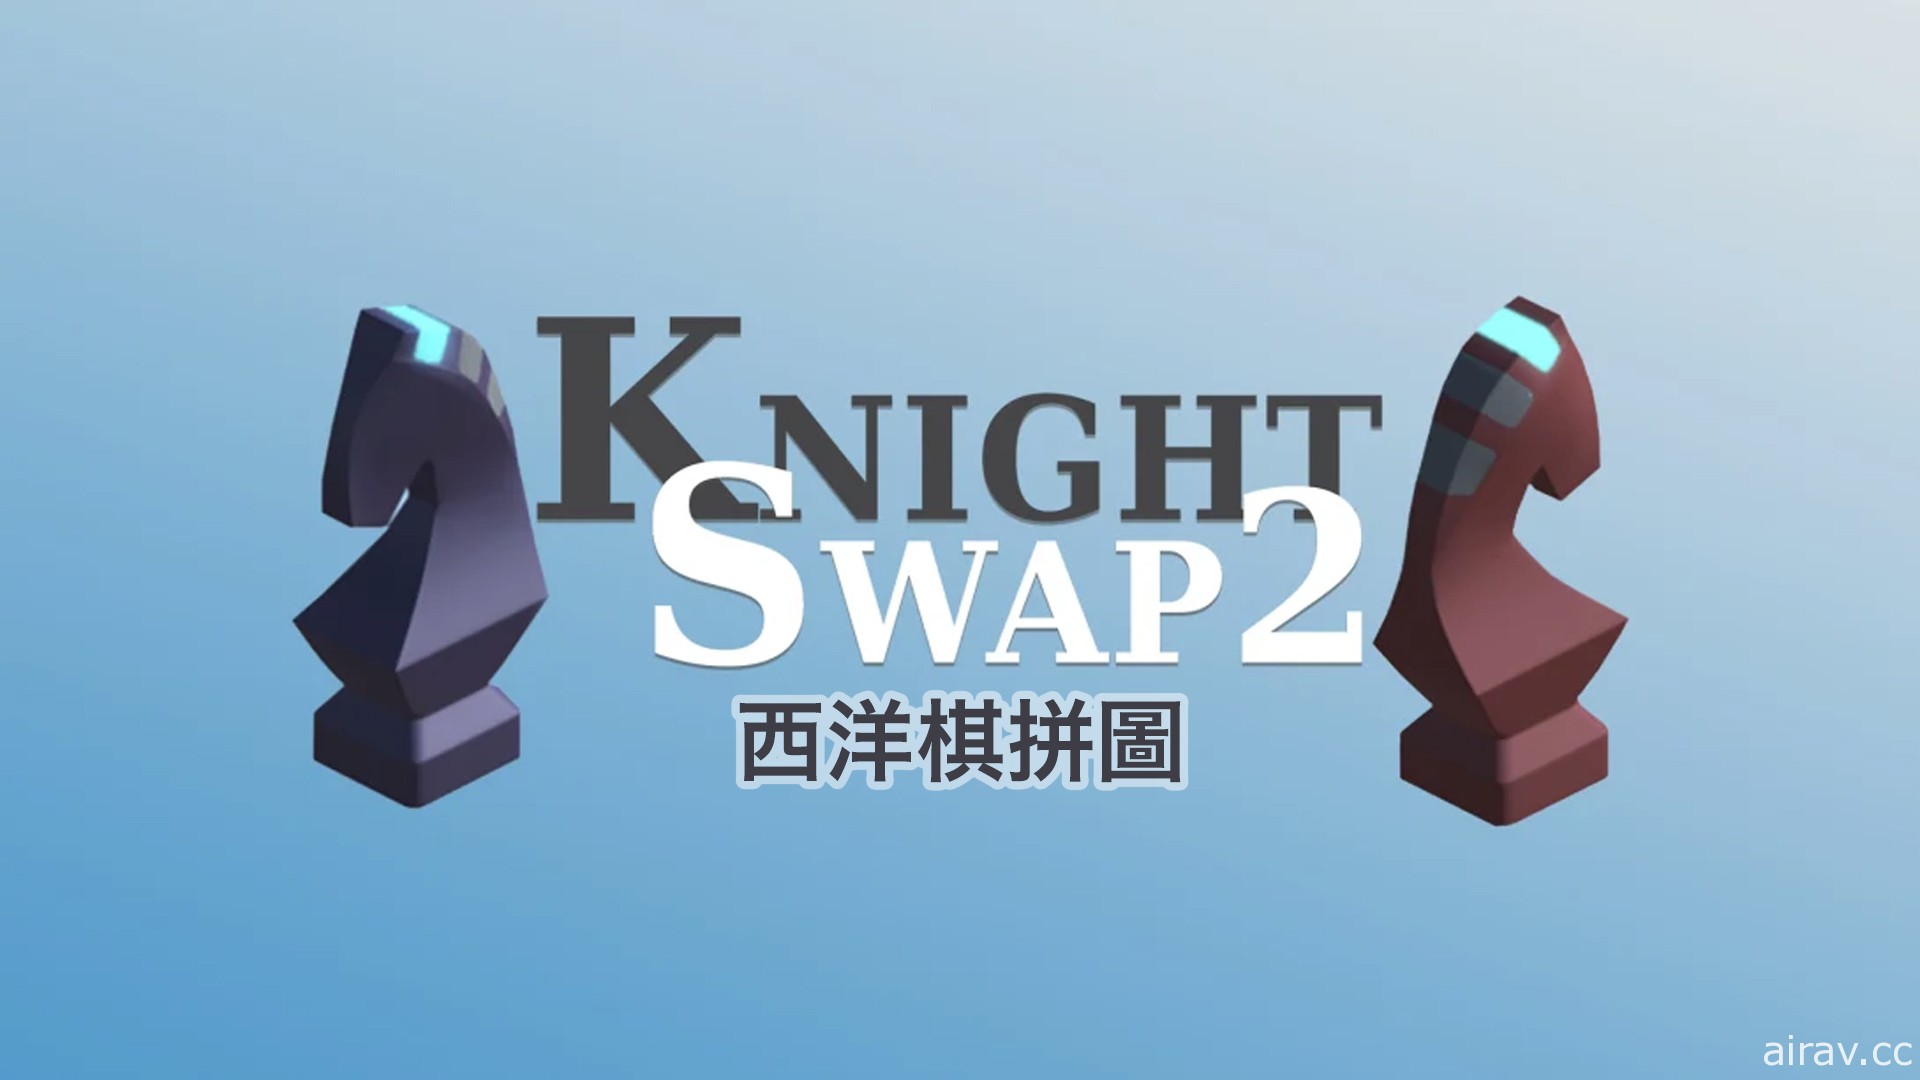 西洋棋解謎遊戲《西洋棋解謎 Knight Swap 2》將於 8 月 26 日發售